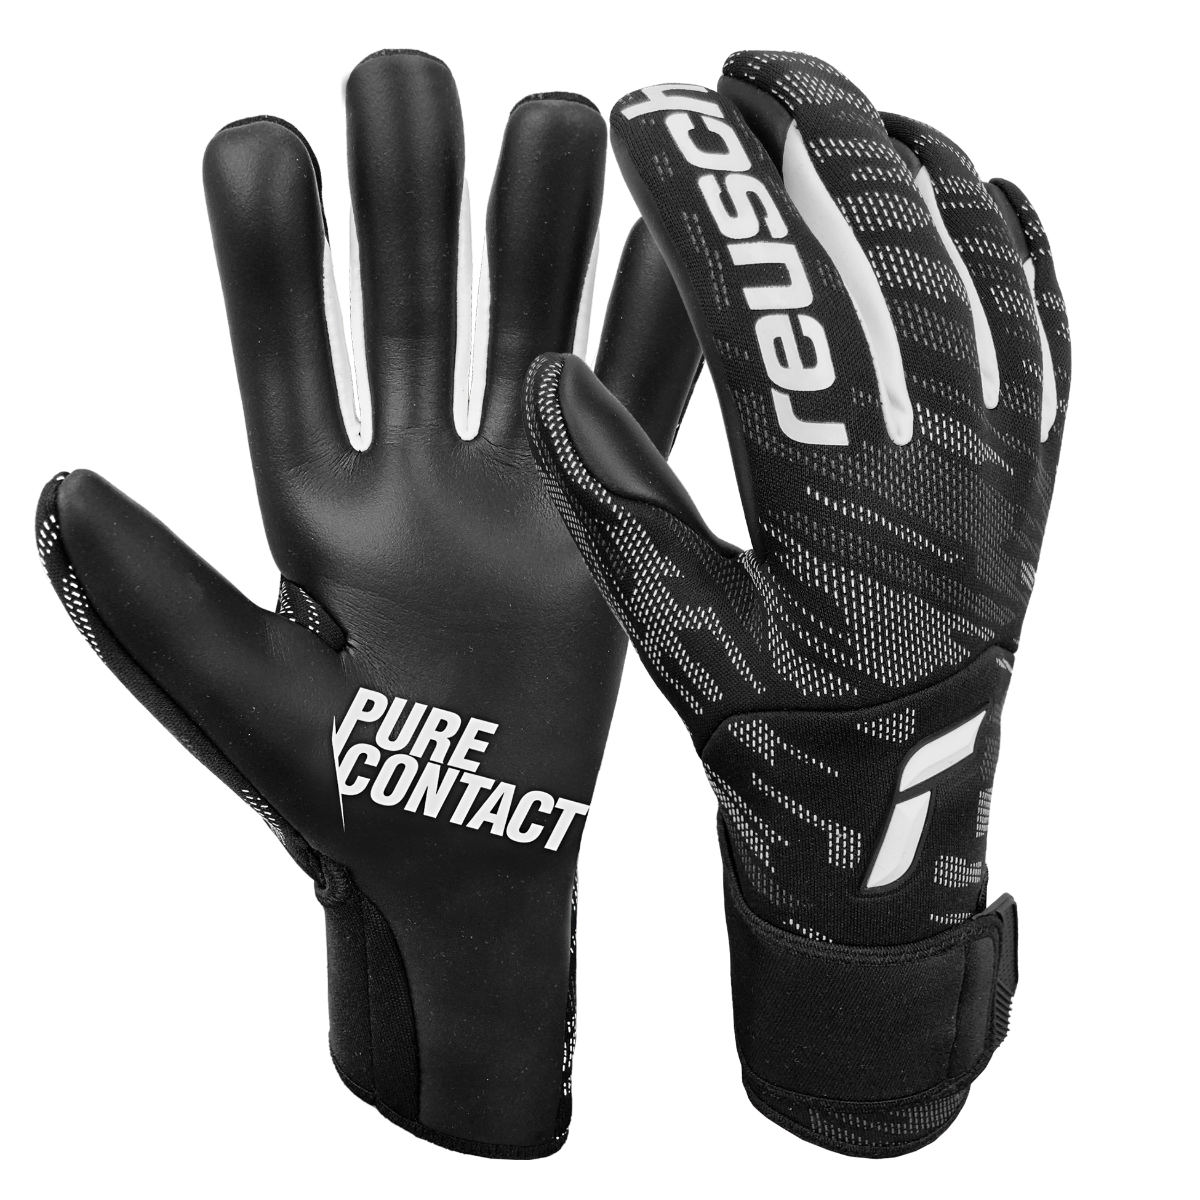 Reusch Pure Contact Infinity Goalkeeper Gloves - Black (Pair)